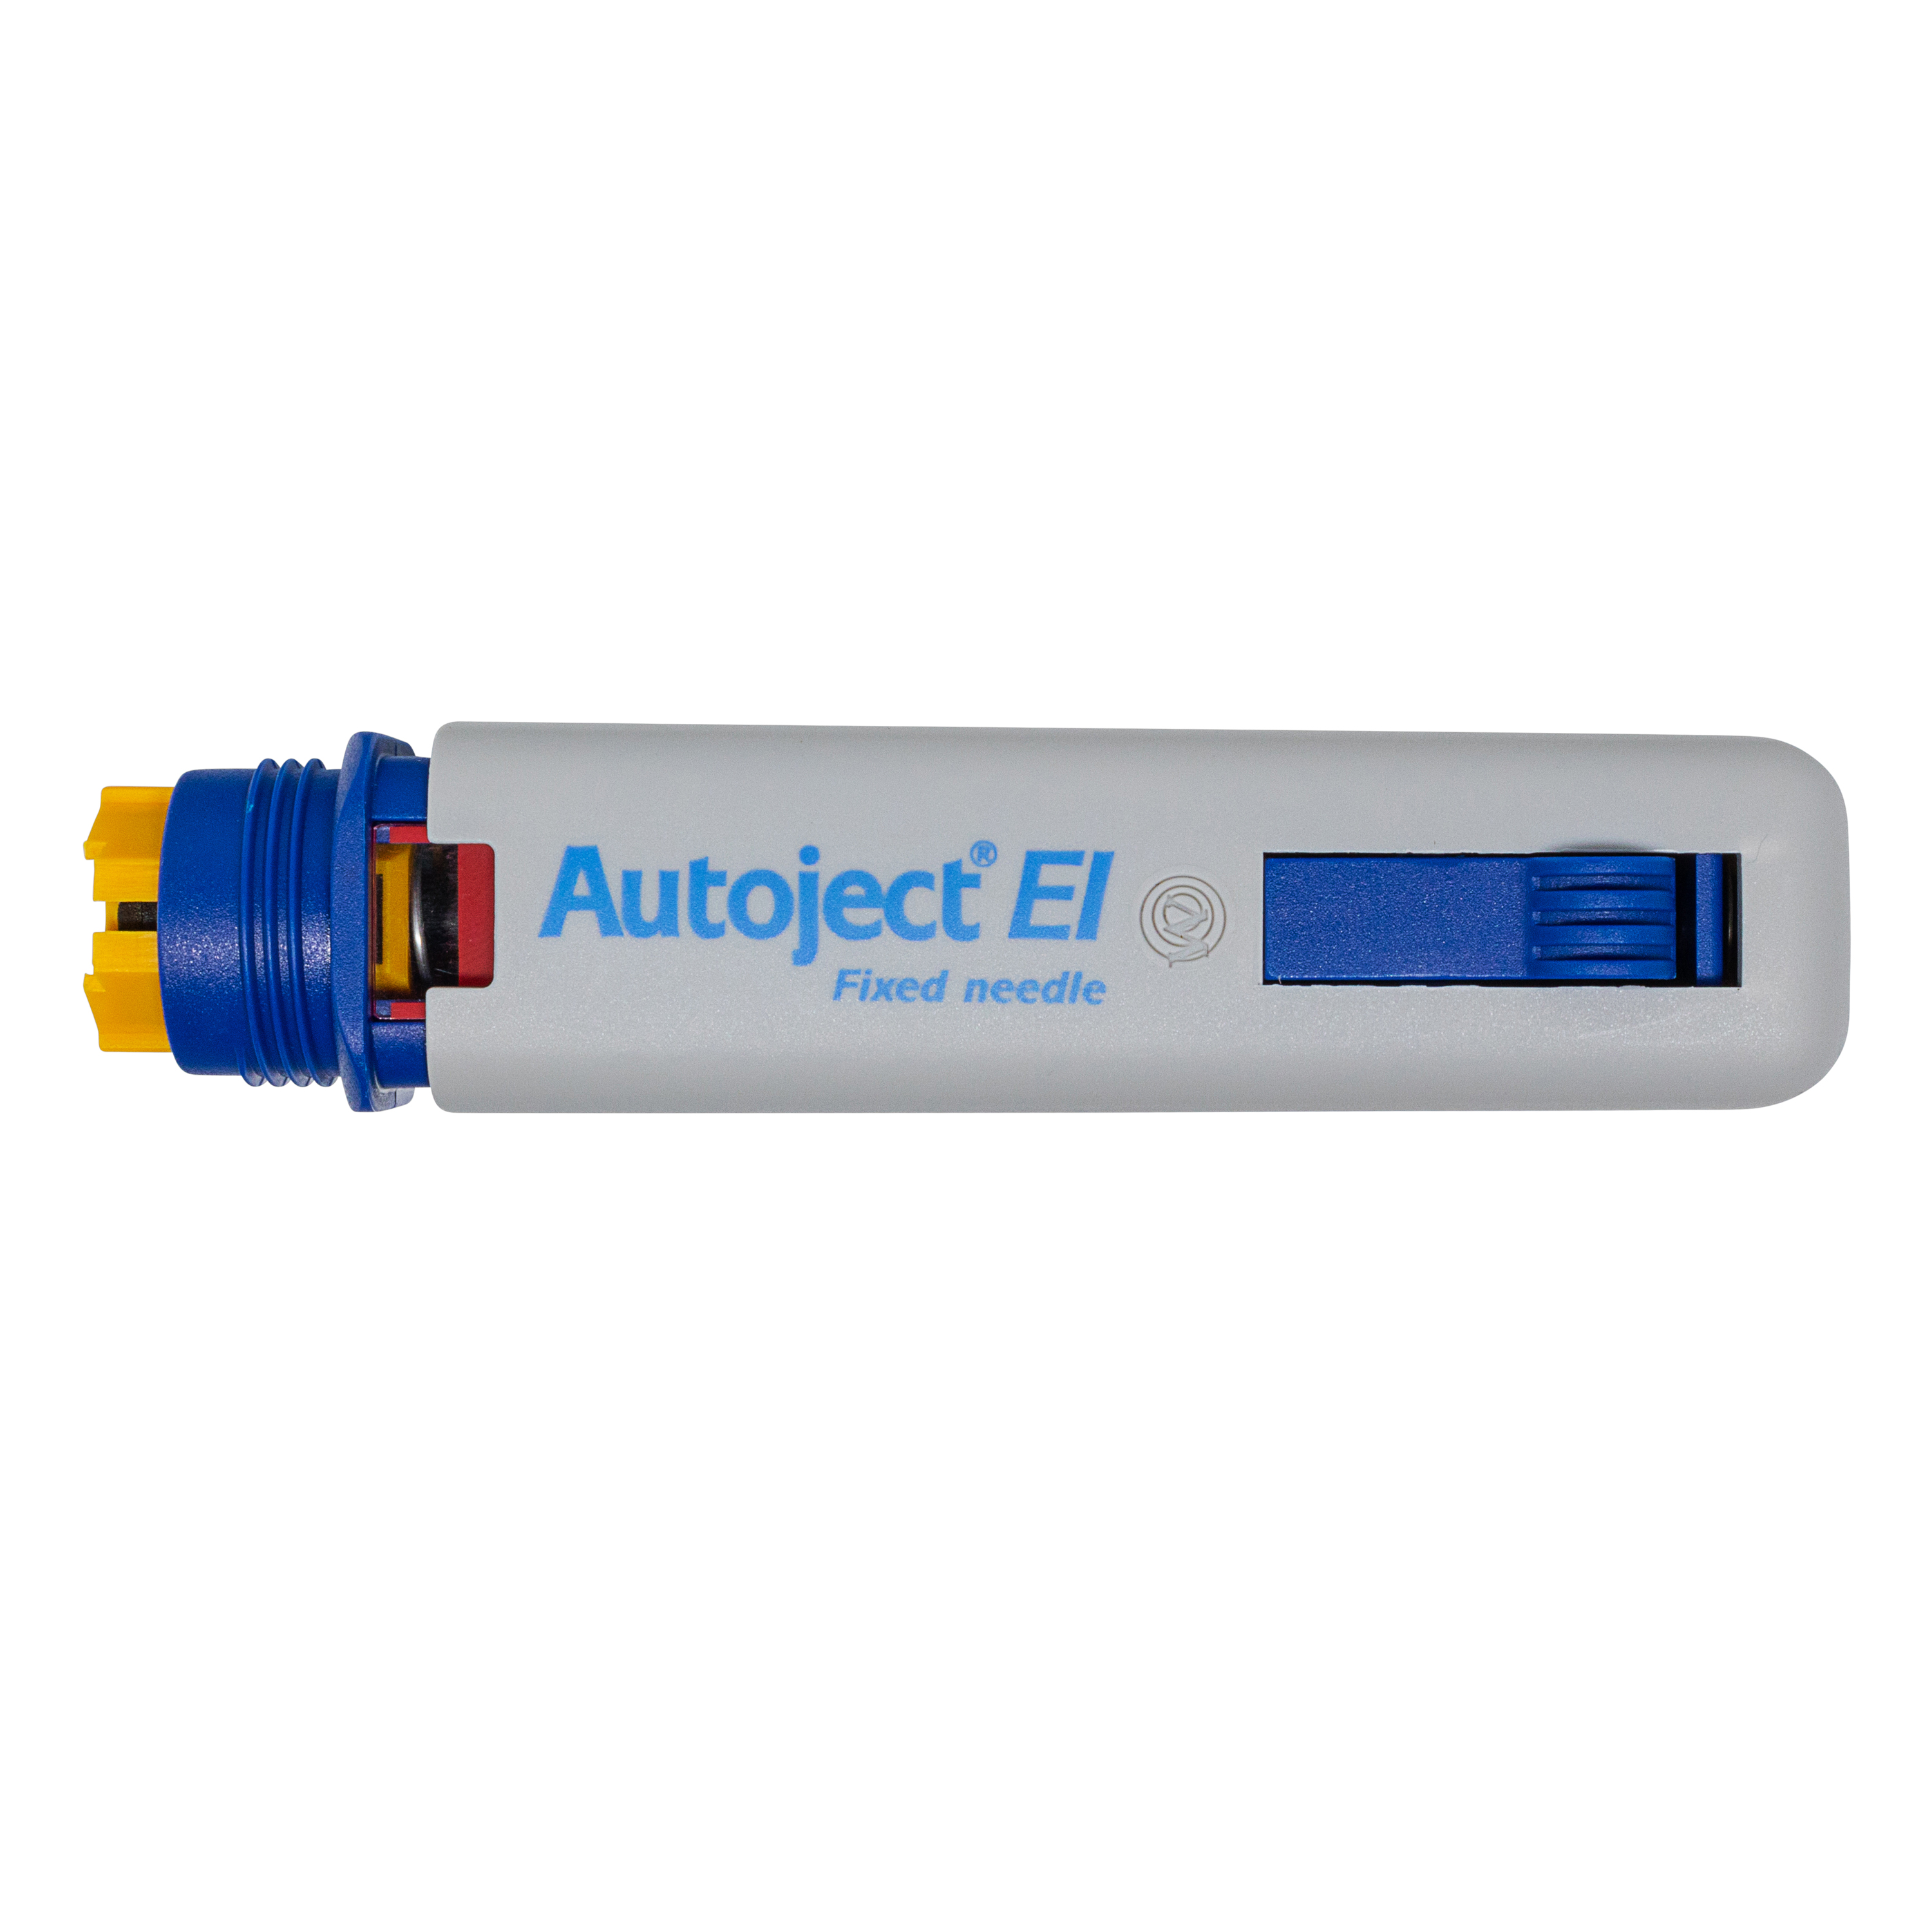 Owen Mumford Autoject EI Injection Aid Device AJ1310